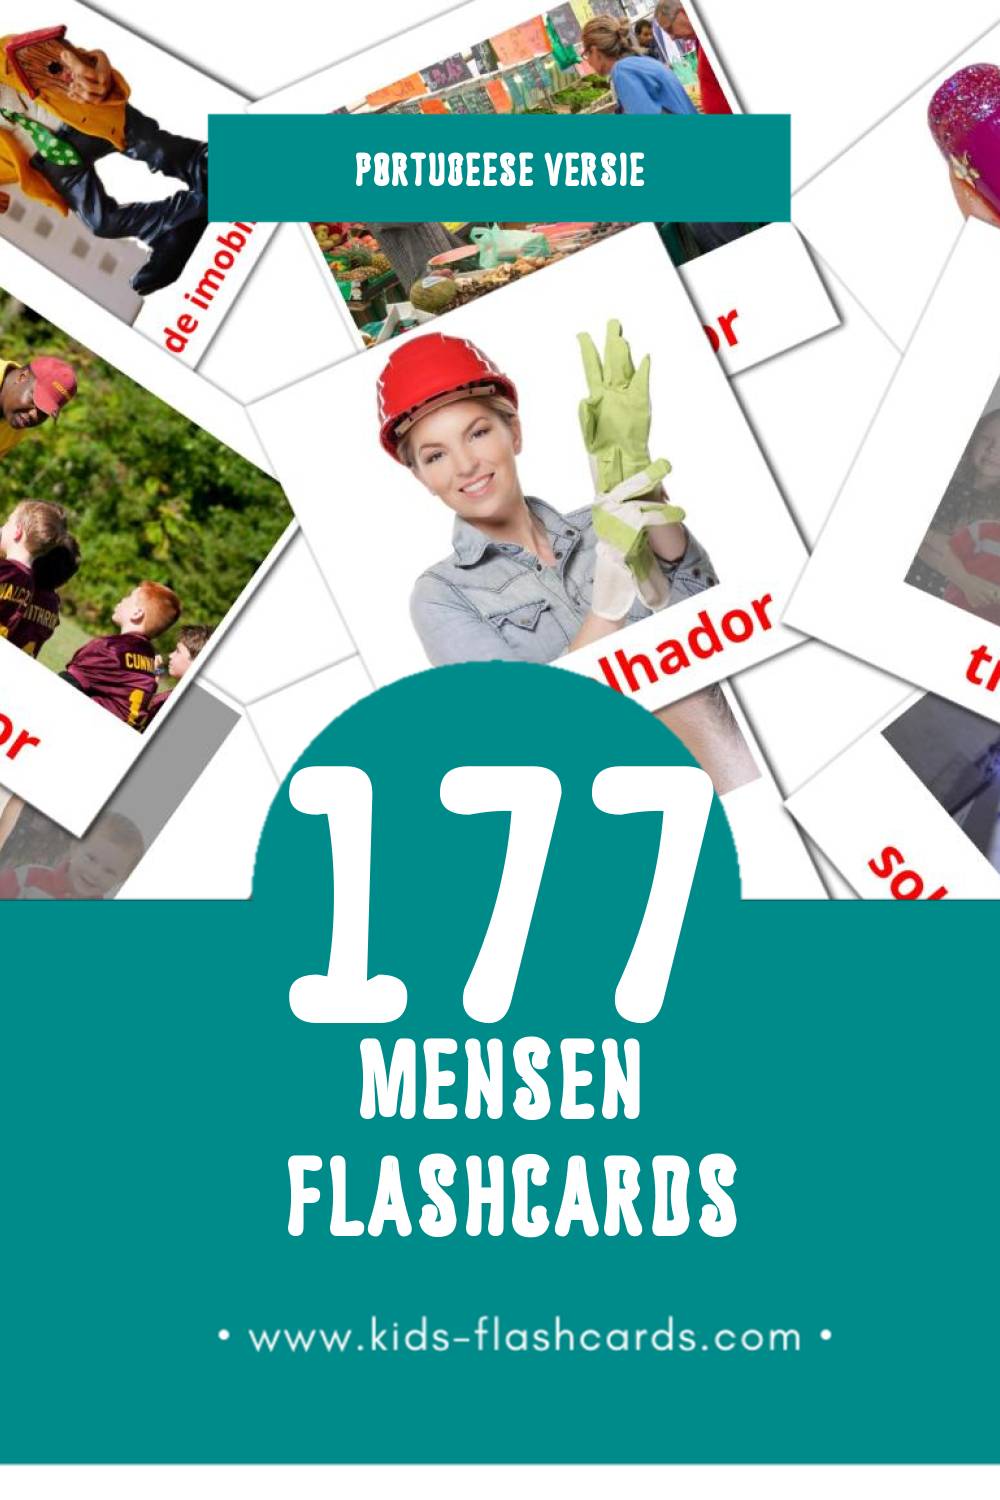 Visuele Pessoas  Flashcards voor Kleuters (177 kaarten in het Portugees)